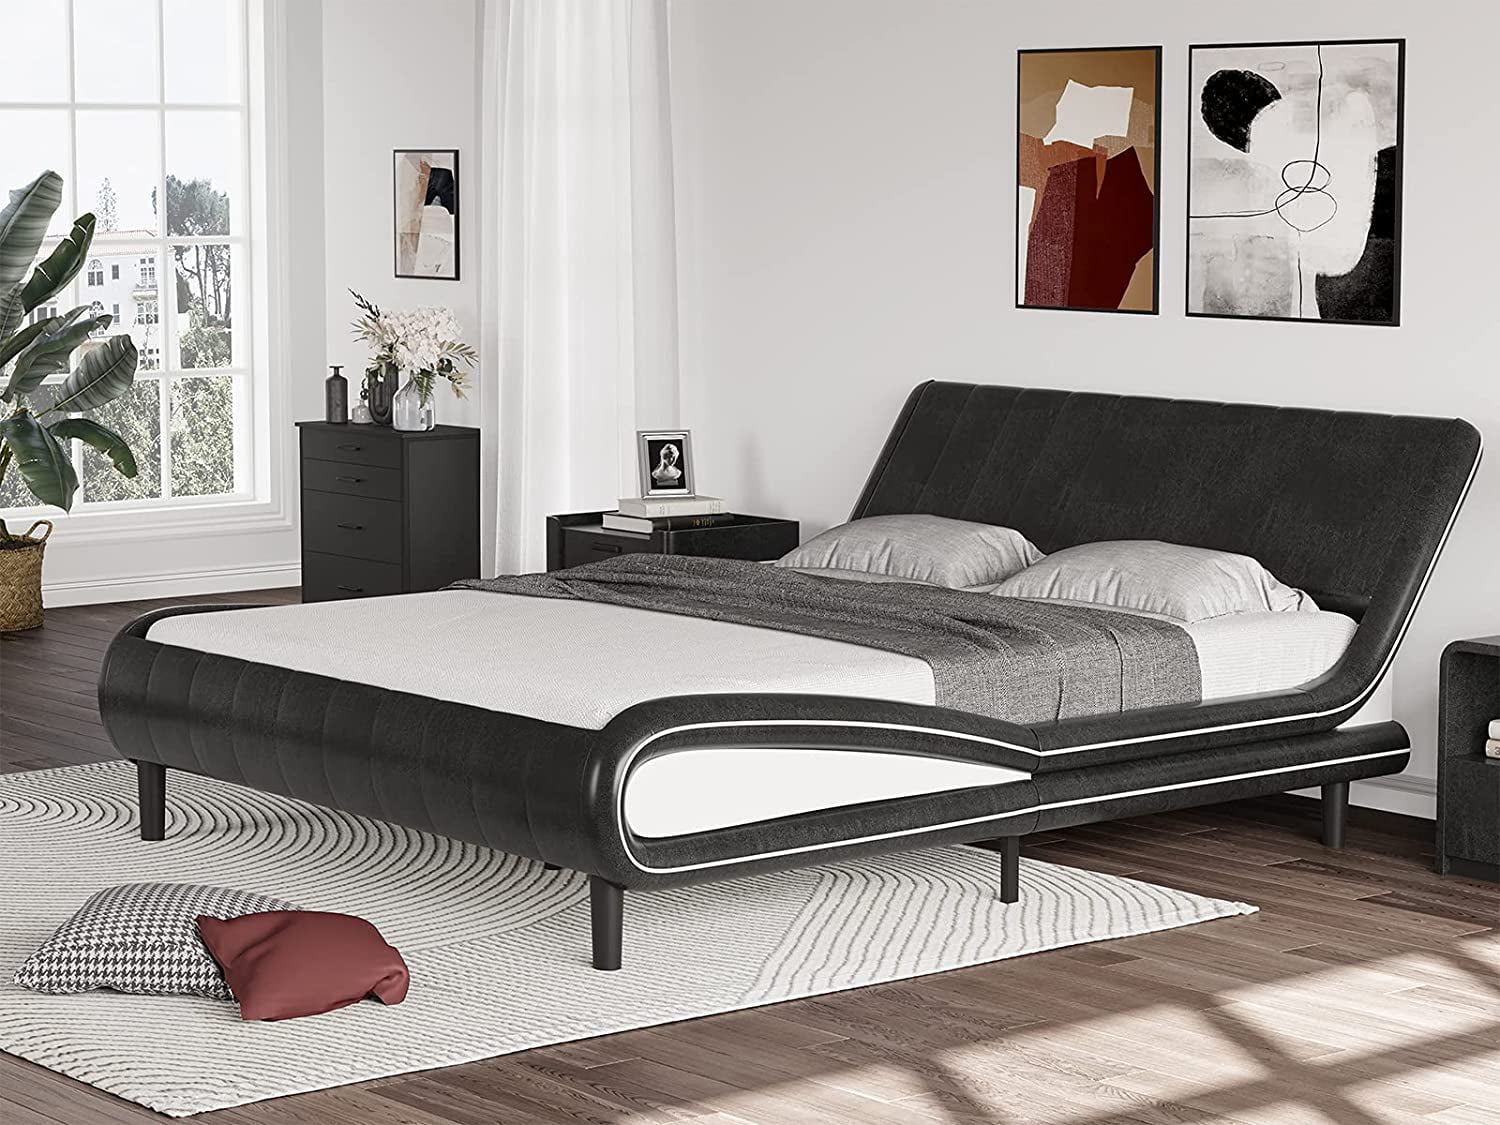 Details about   Platform Frame Slats Bed Queen Size Modern Bed Faux Upholstered Headboard Black 